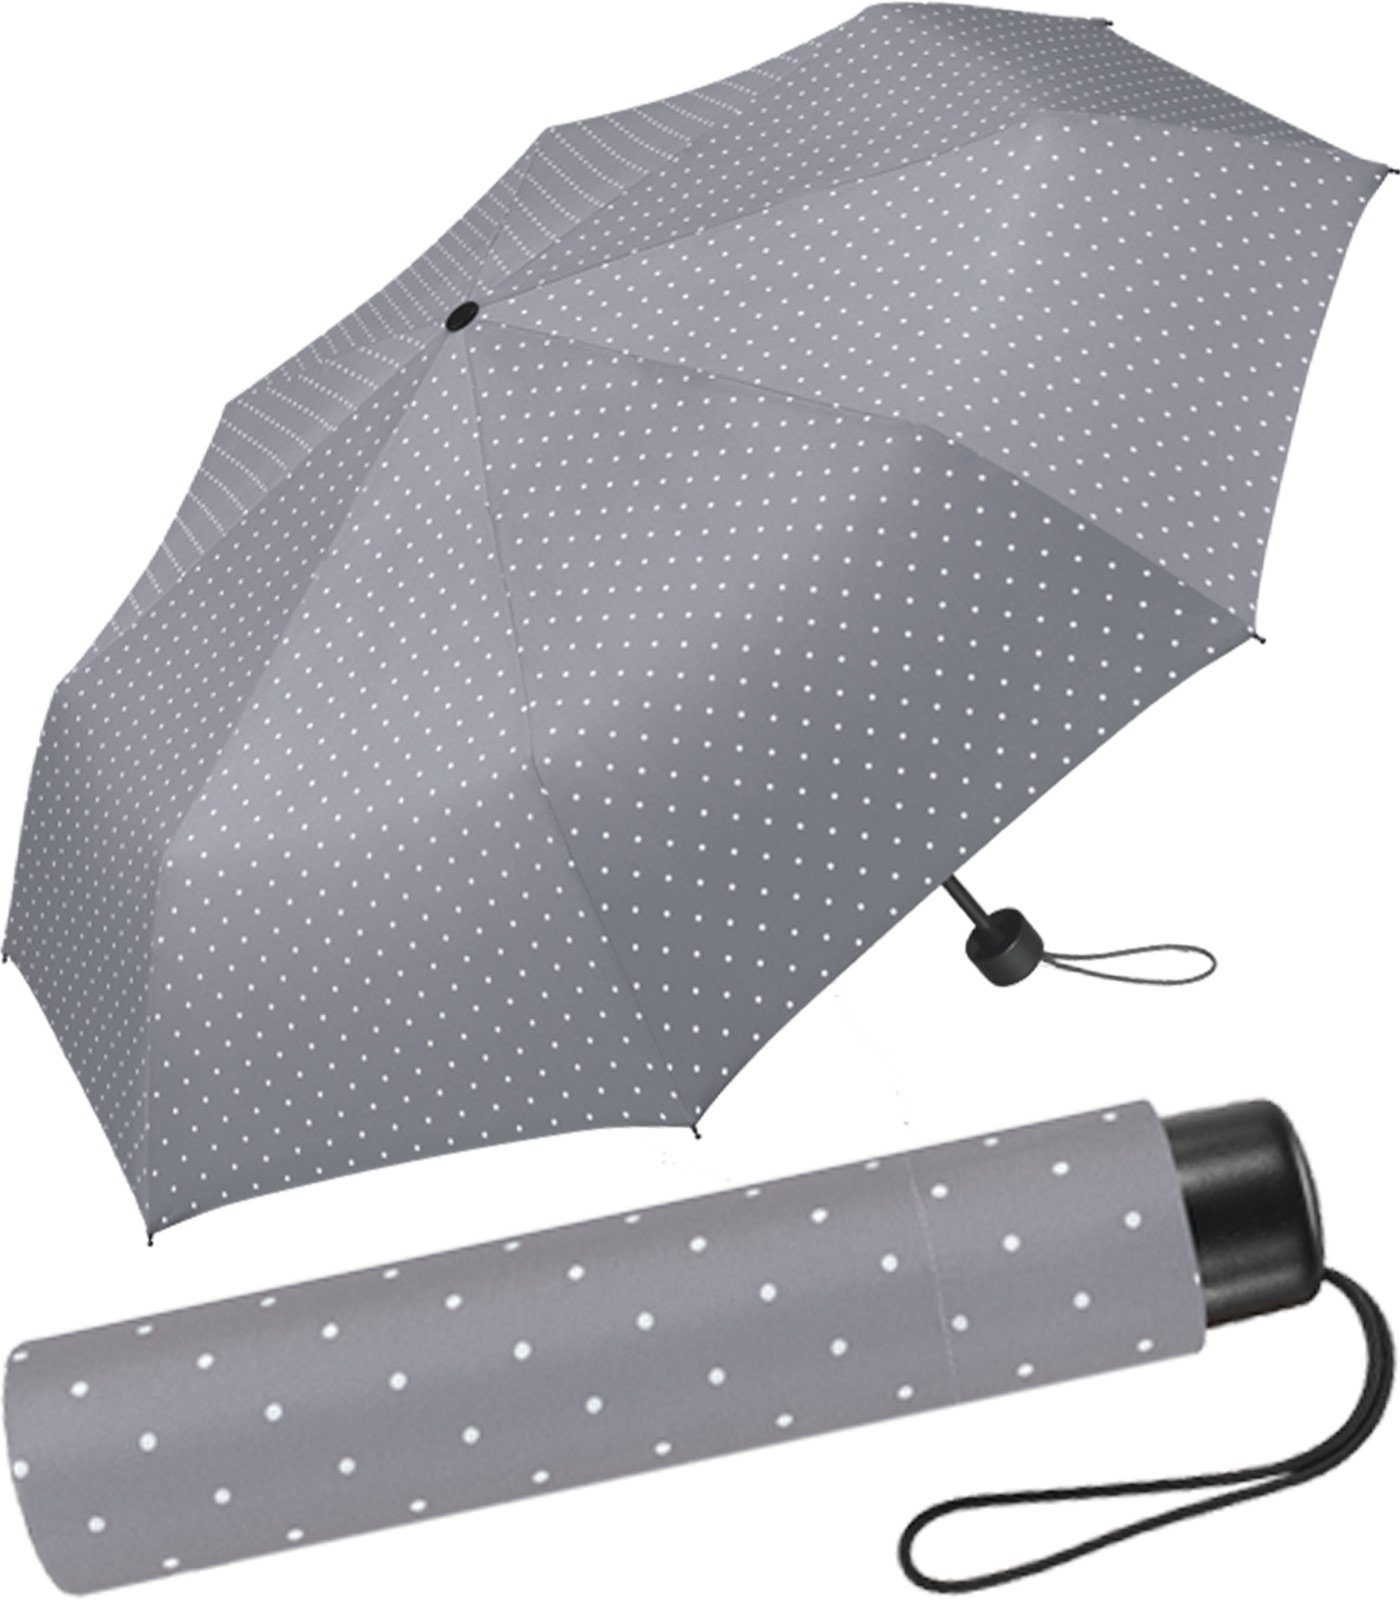 HAPPY RAIN Taschenregenschirm schöner Regenschirm Handöffner für Damen, in vielen Farben mit kleinen Punkten - grau